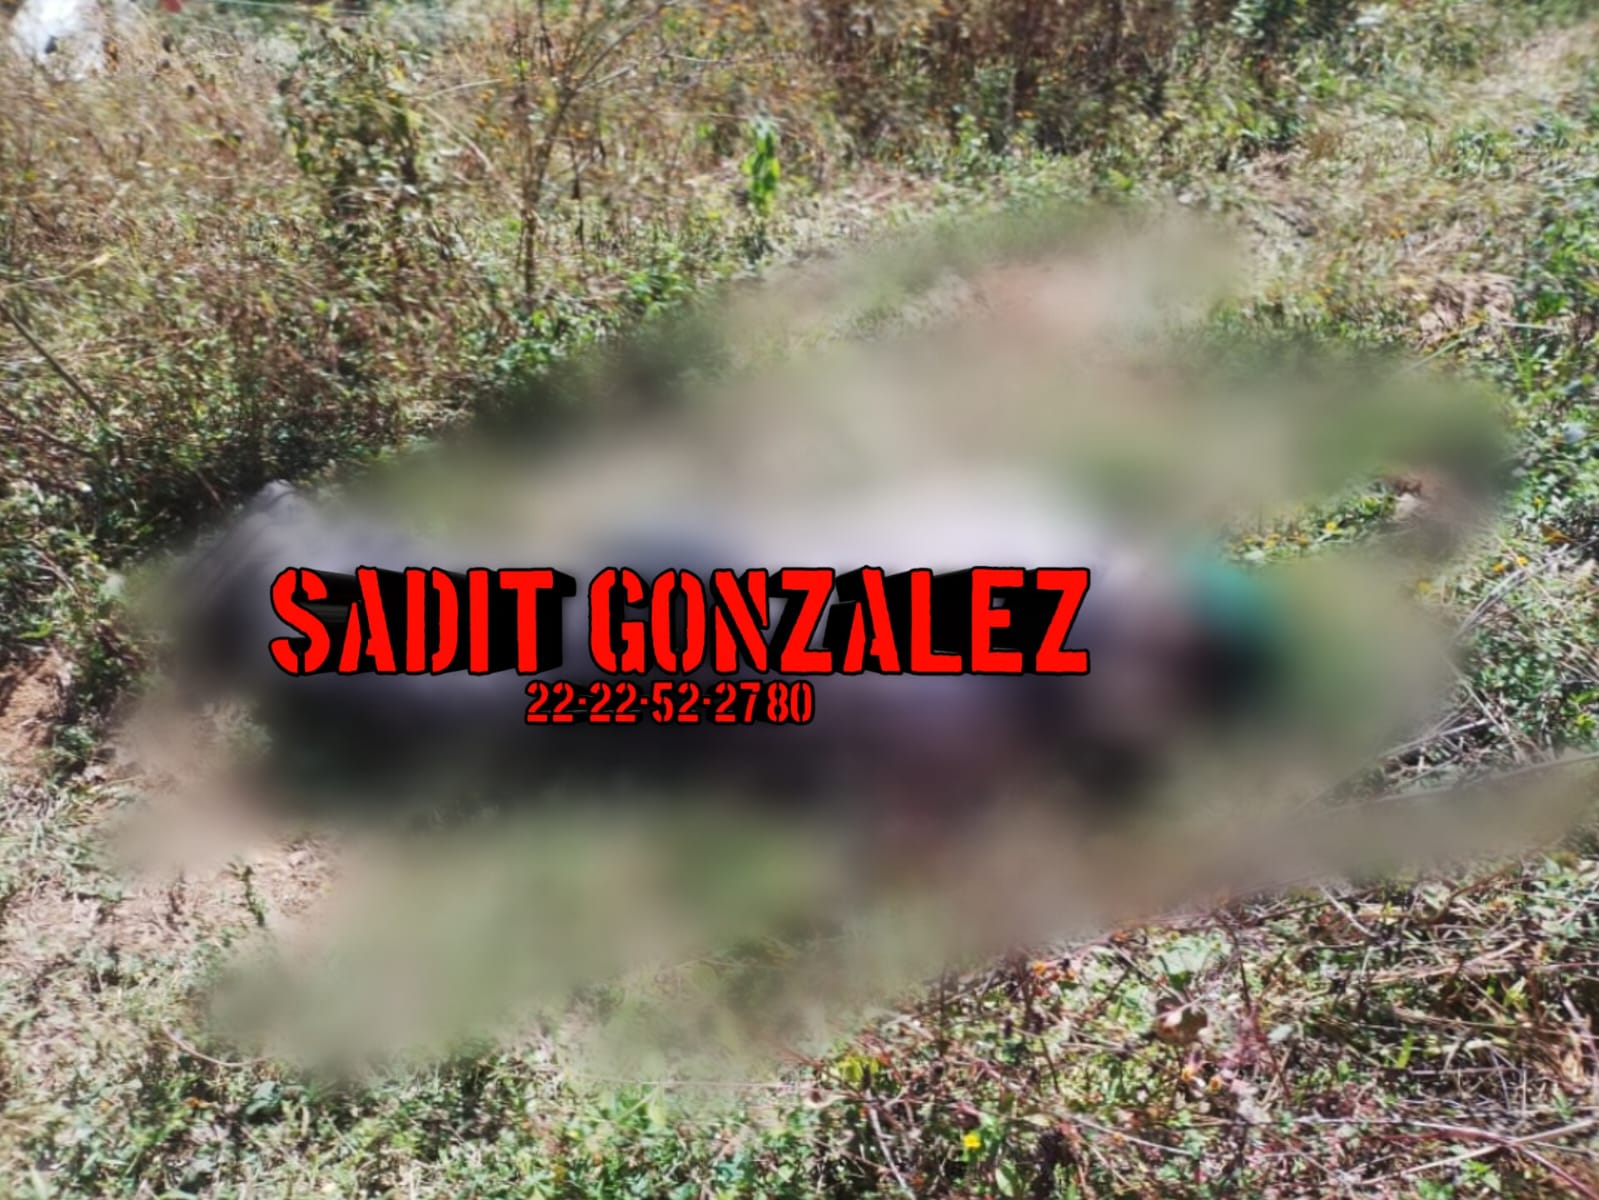 Cadáver de un hombre en descomposición en Huauchinango